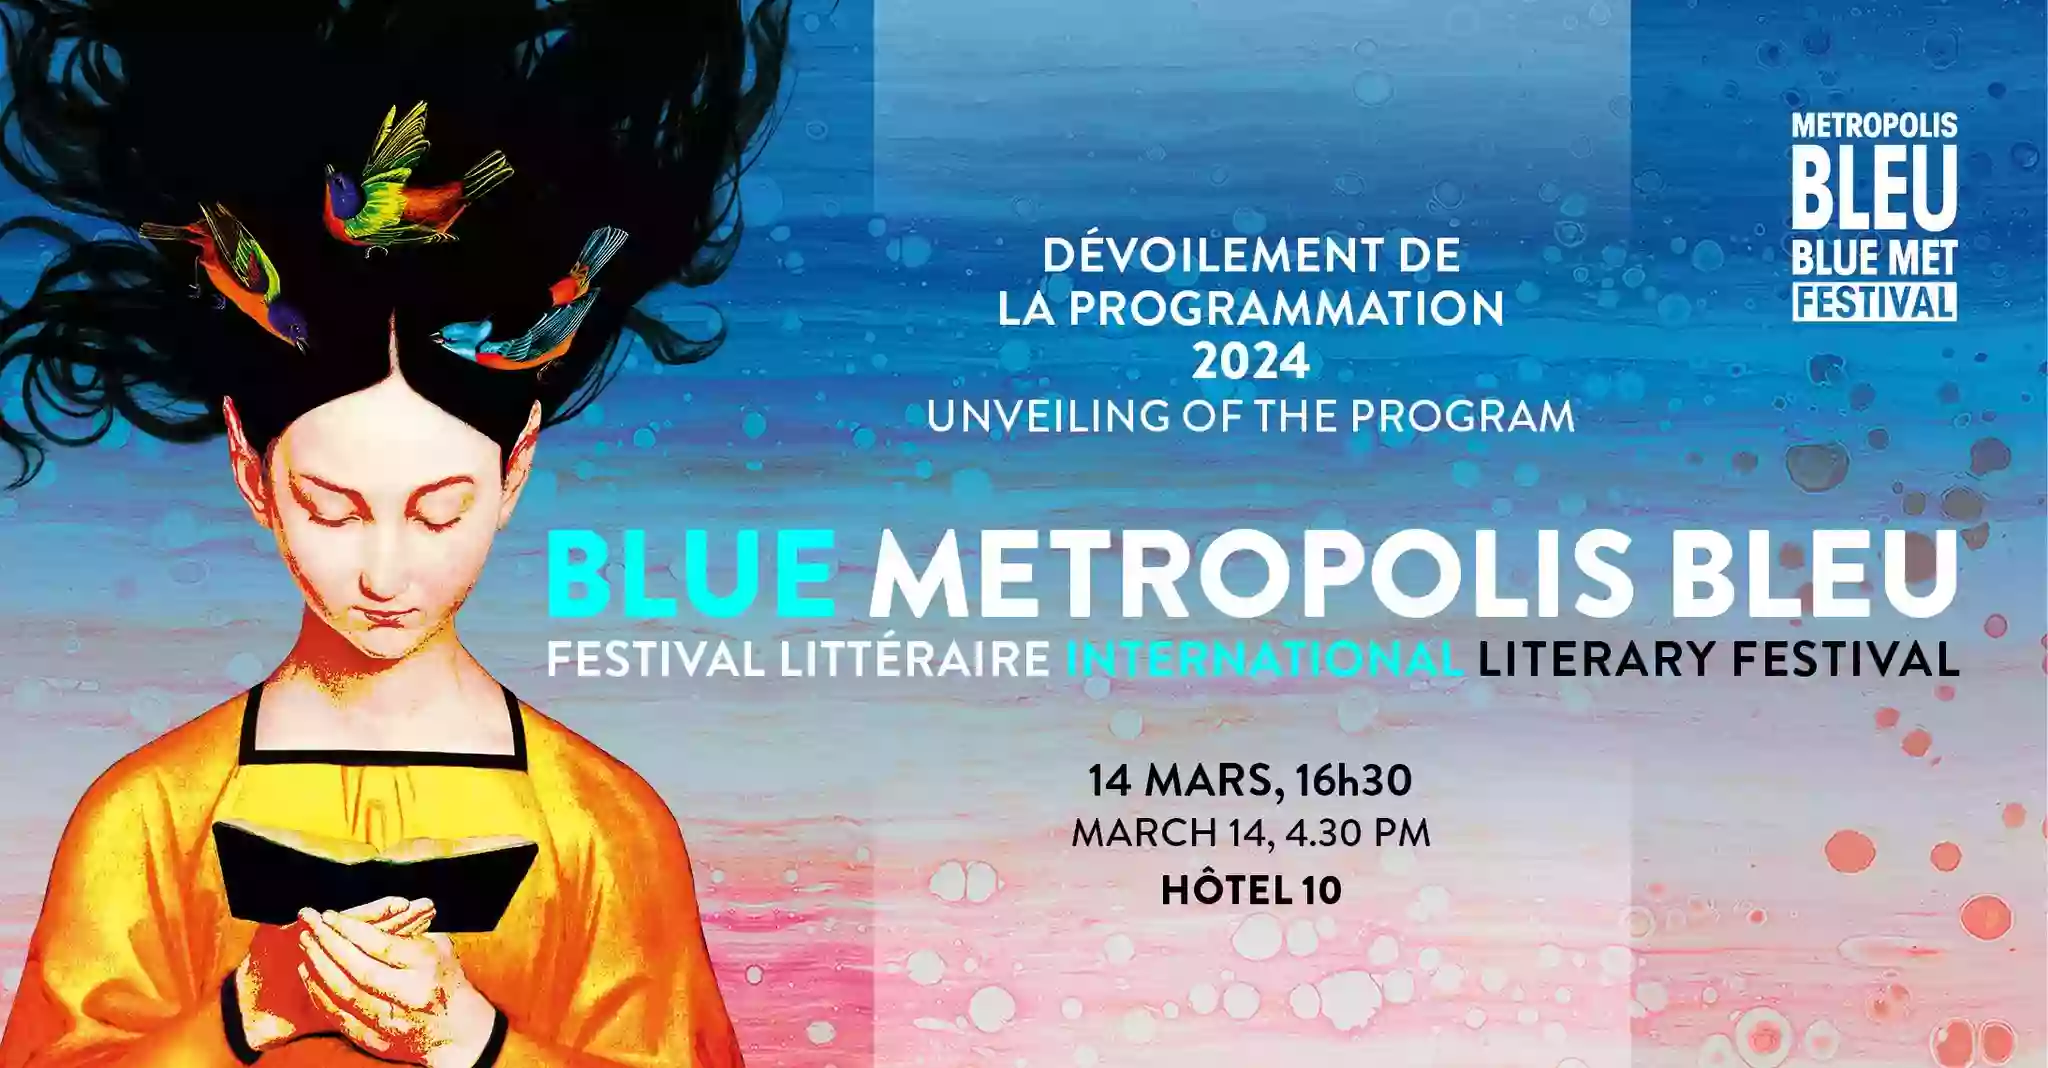 У літфестивалі Metropolis bleu в Монреалі візьмуть участь письменник Юрій Андрухович і перекладач Ростислав Нємцев